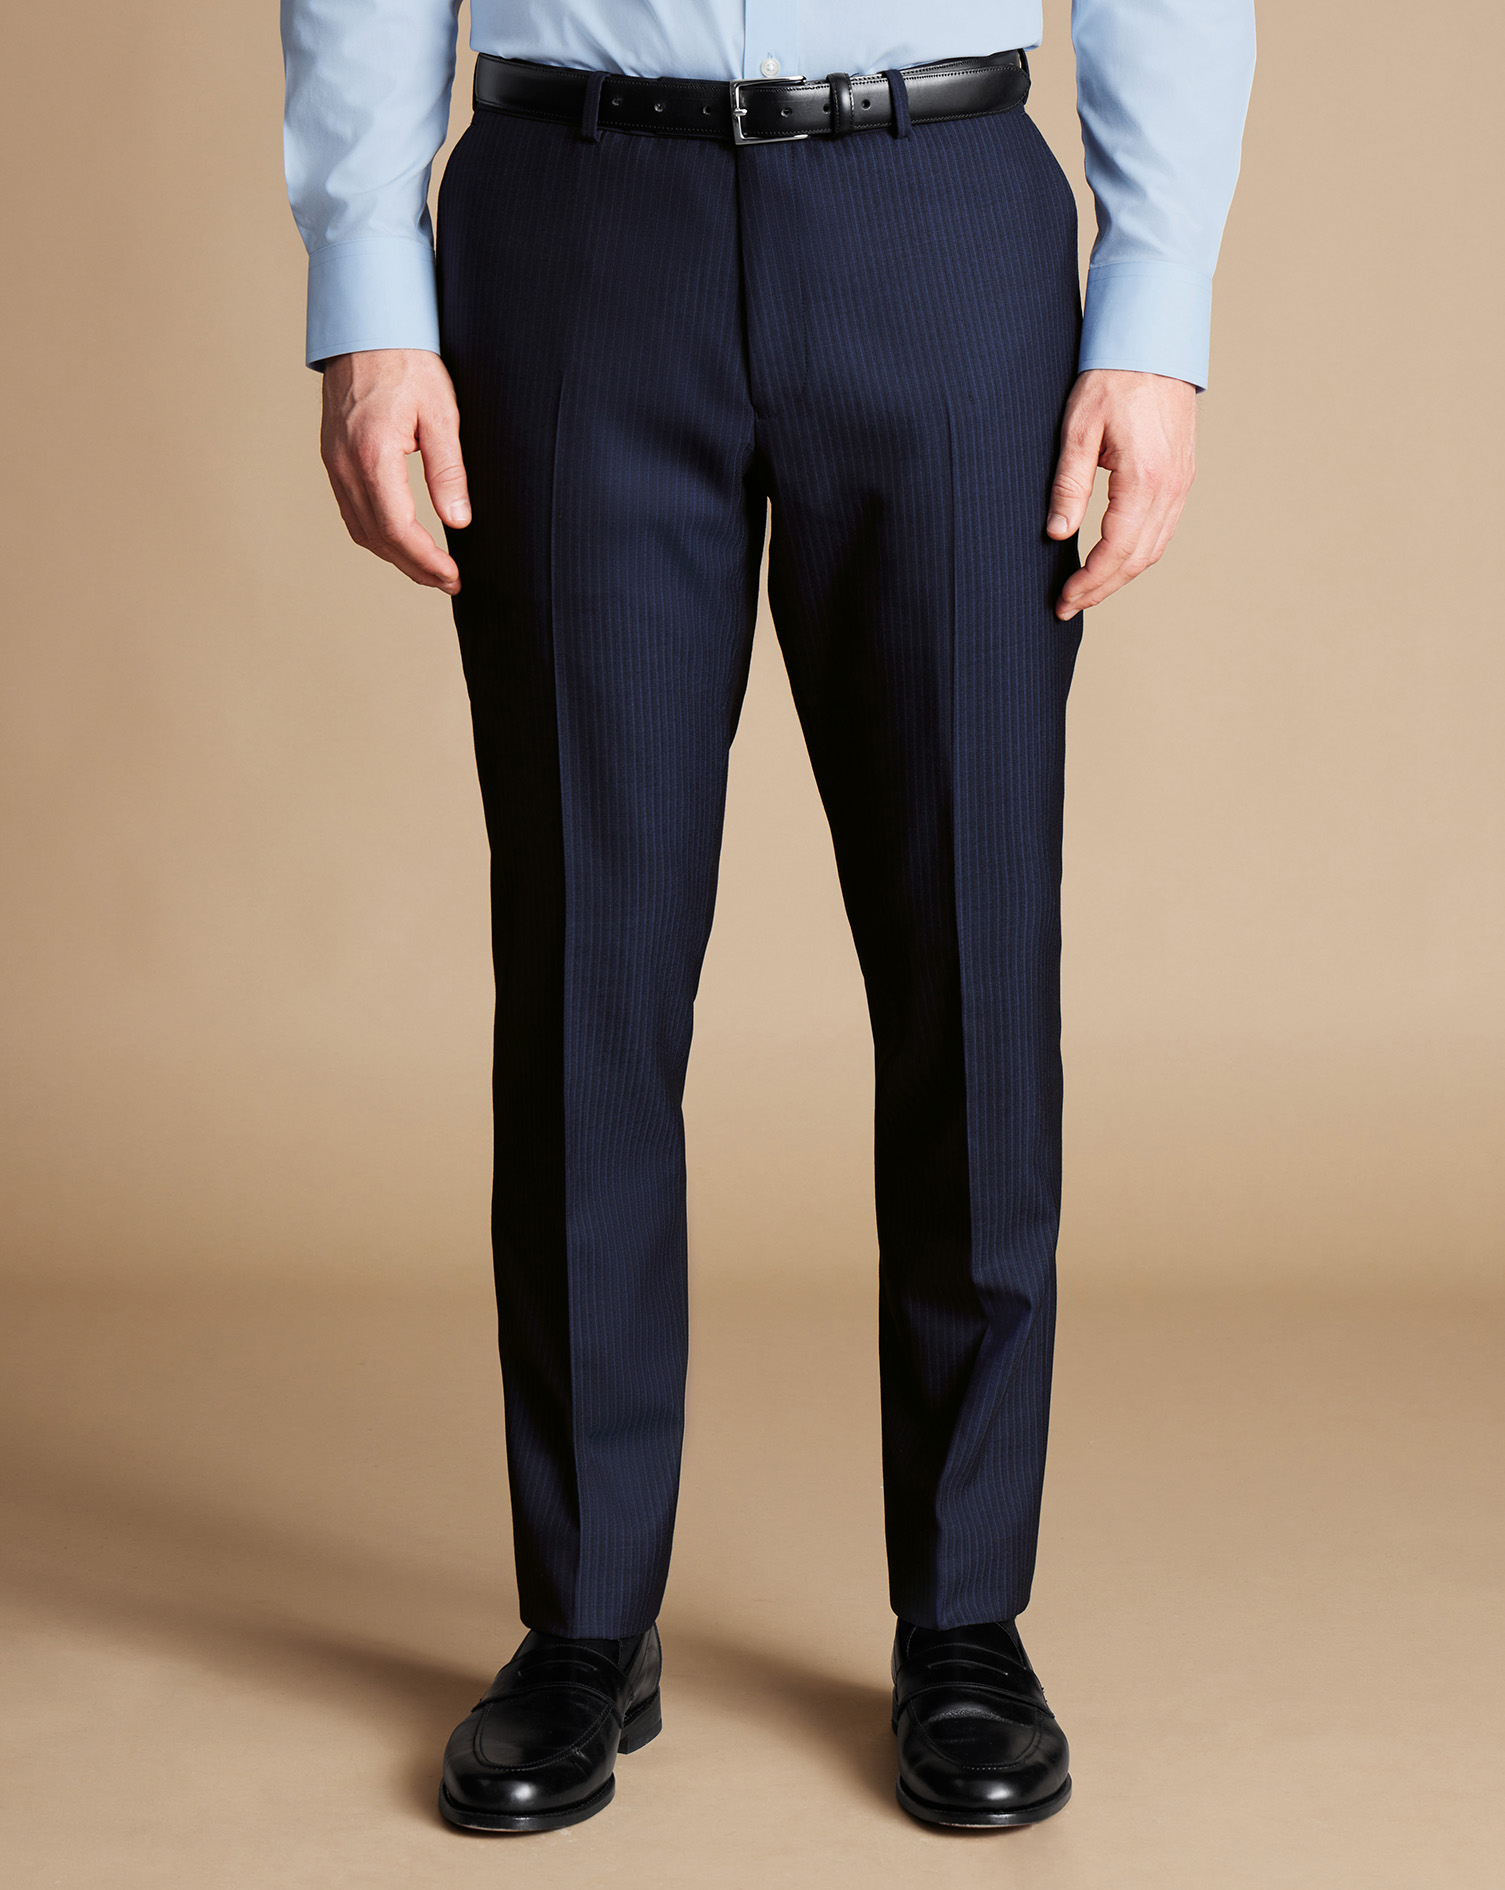 Men's Charles Tyrwhitt Stripe Suit Trousers - Navy Size 36/32
